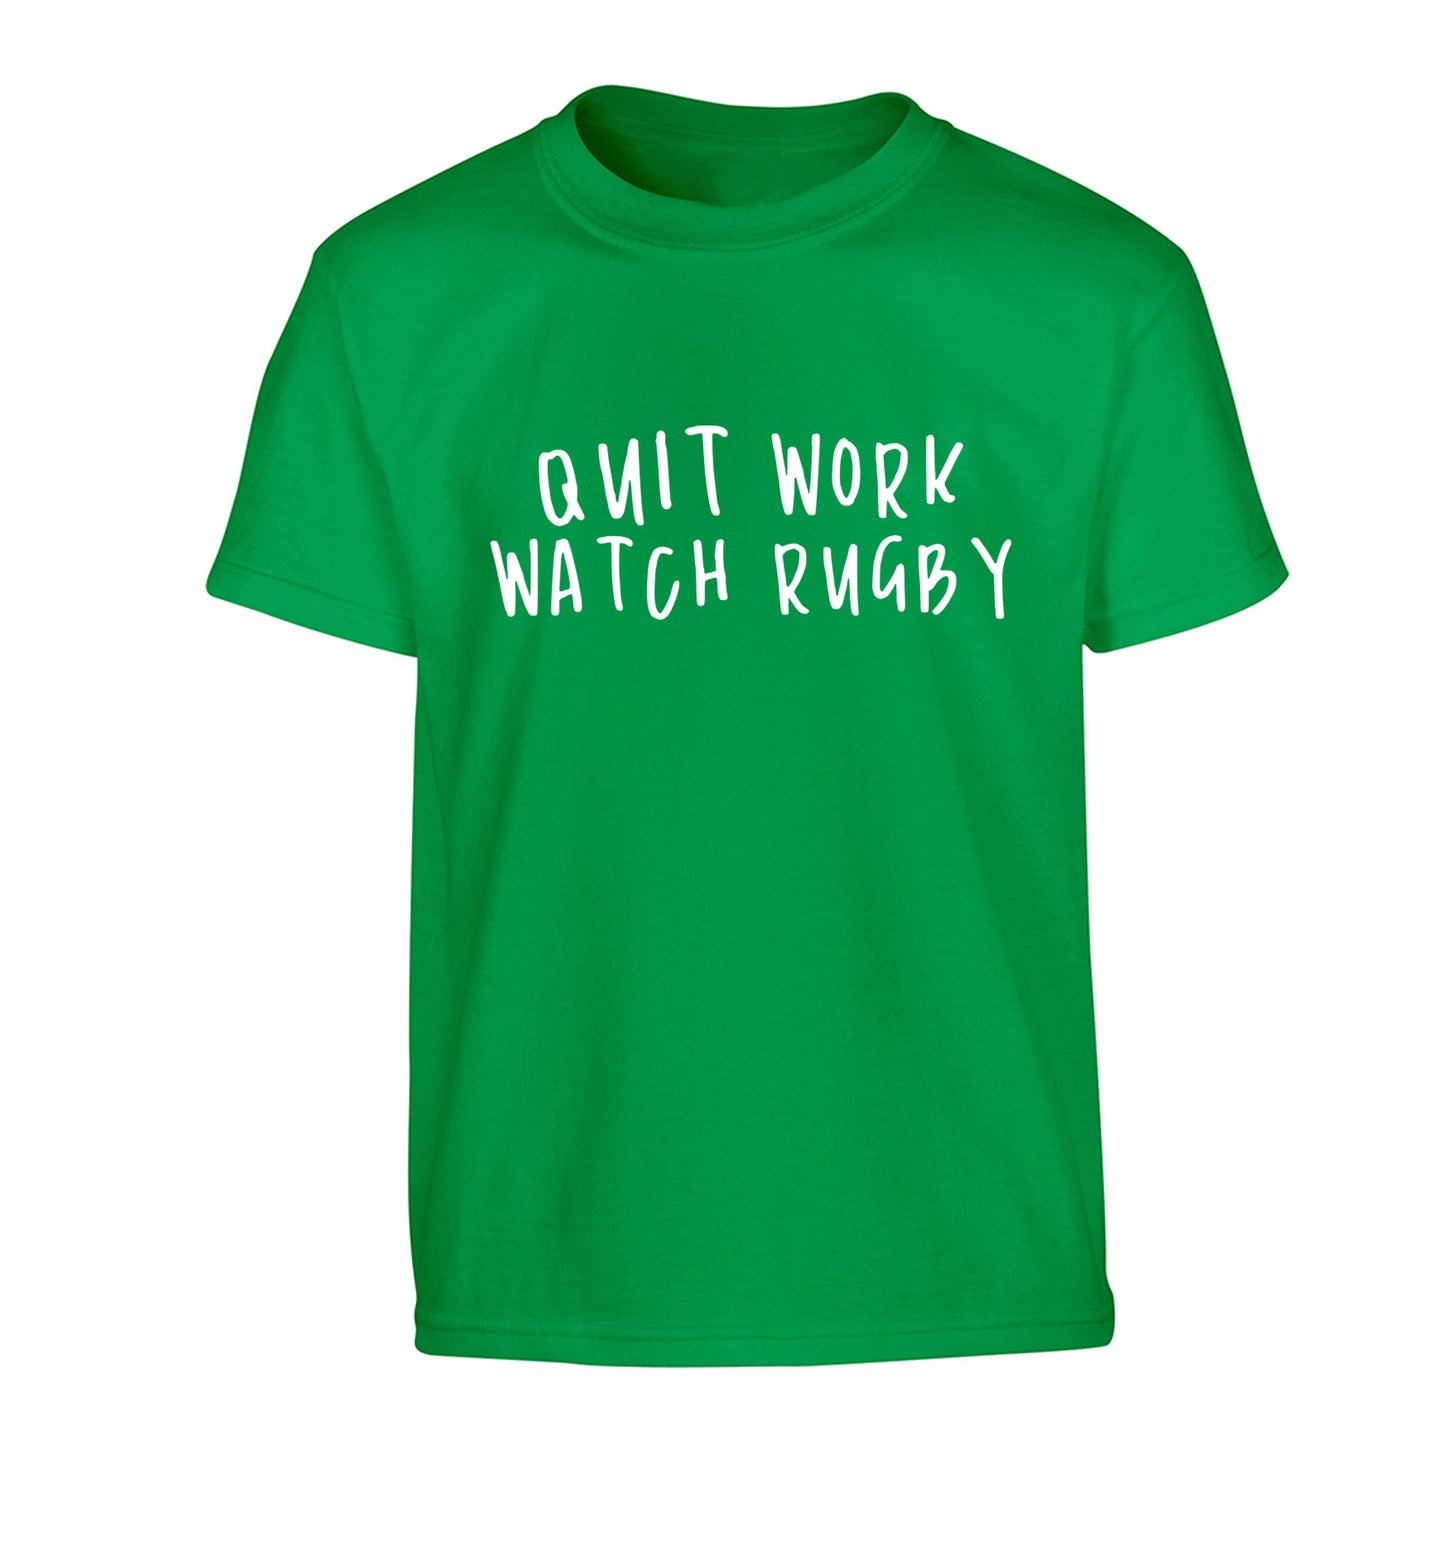 Quit work watch rugby Children's green Tshirt 12-13 Years